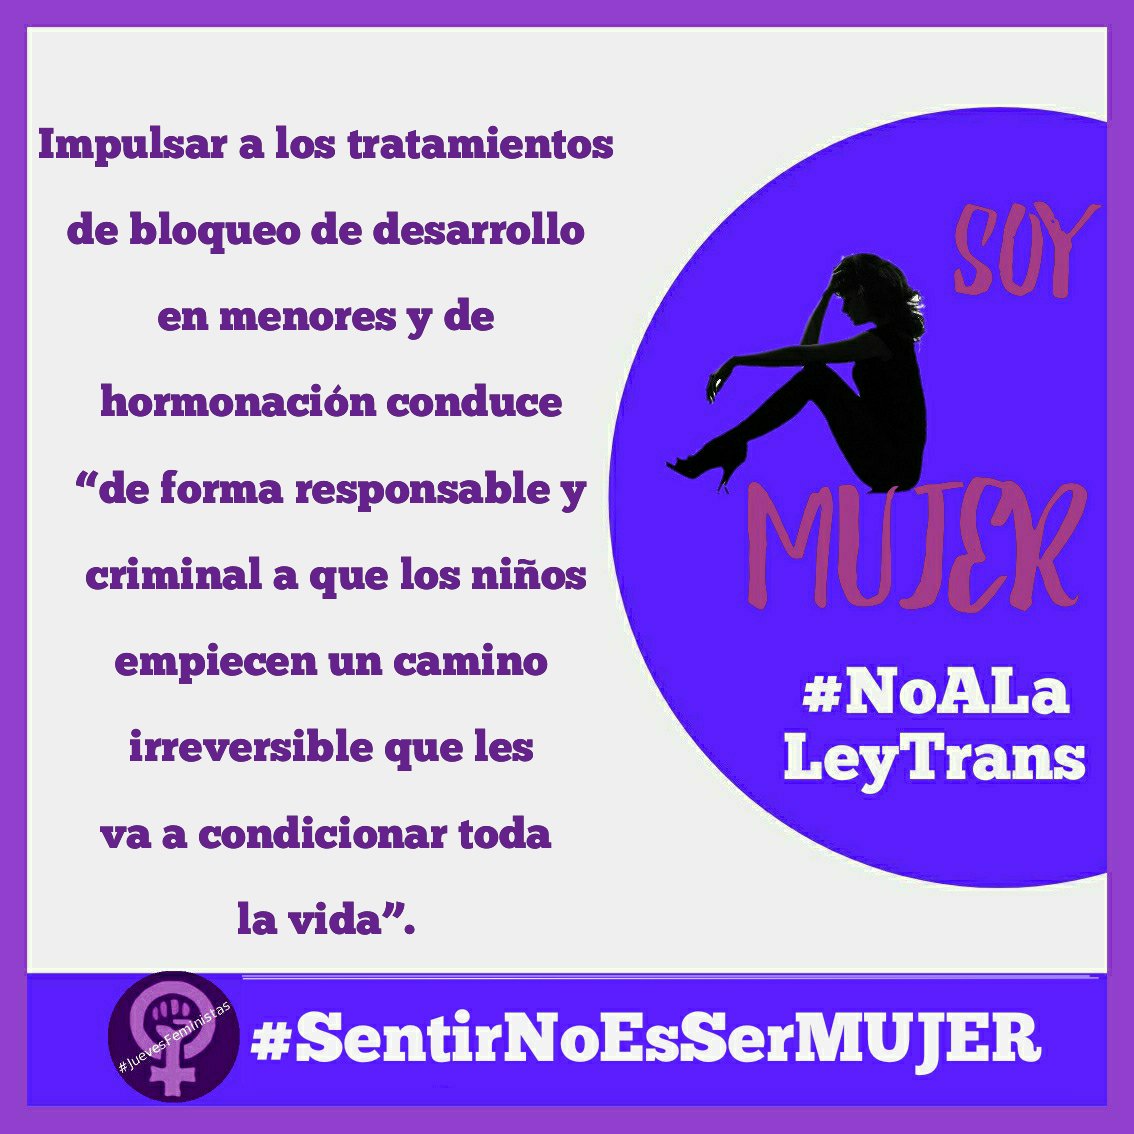 No se puede hormonar a un menor de espaldas a sus padres'
#SentirNoEsSerMujer
#NiALaLeyTrans
#JuevesFeministas

elespanol.com/espana/politic…